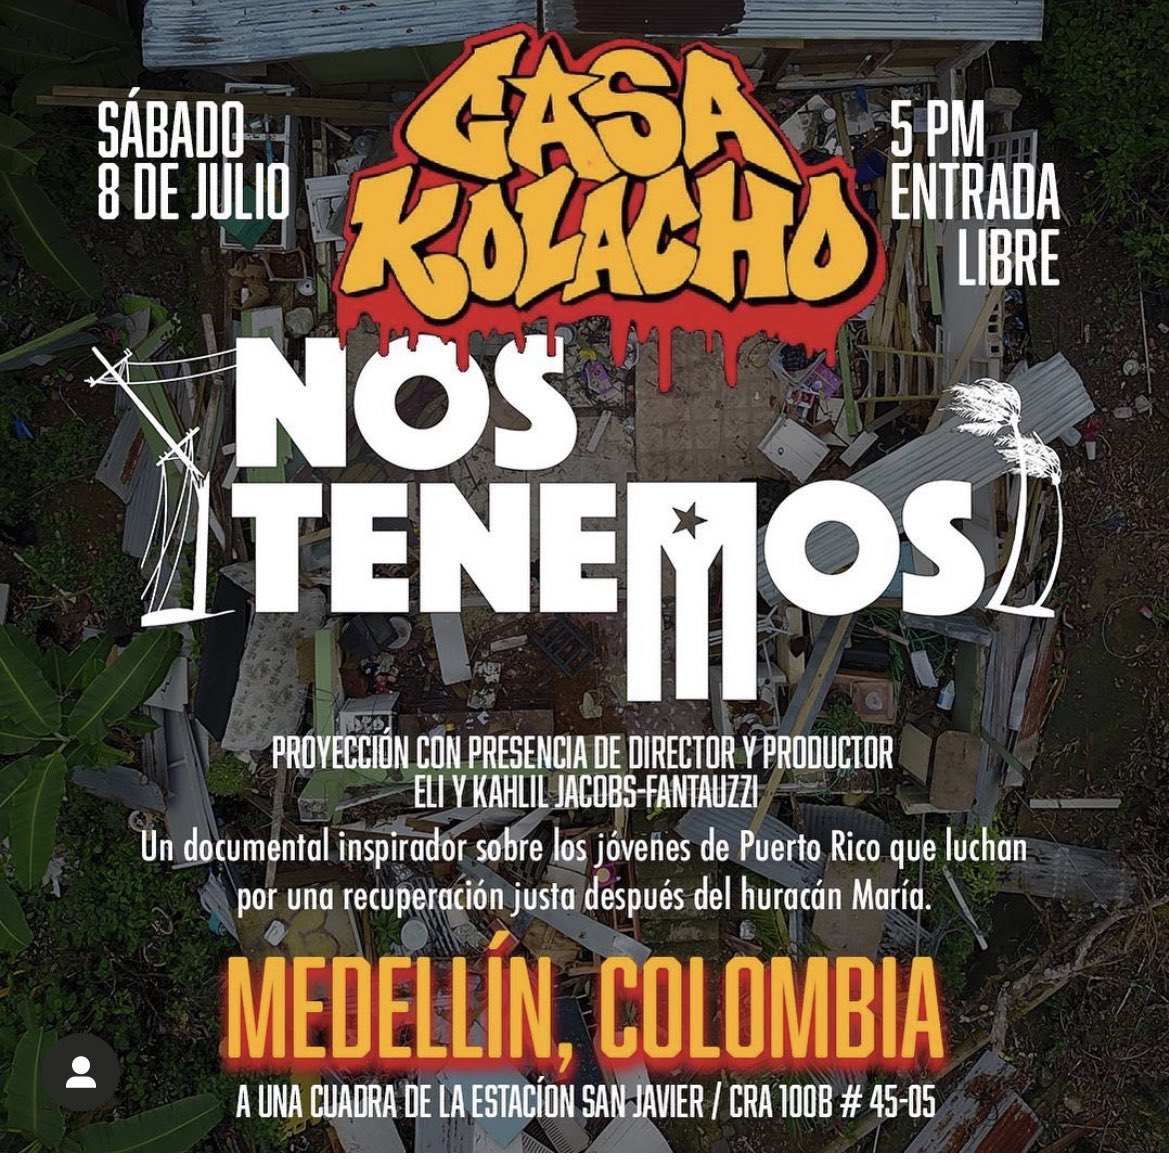 #Medellín Mañana en @CasaKolacho a las 5:00 p.m! Les súper recomiendo esta película. El director y productor estarán para presentarla! ¡Directamente desde Puerto Rico! Es una historia MARAVILLOSA de resistencia!!!! @fistuptv